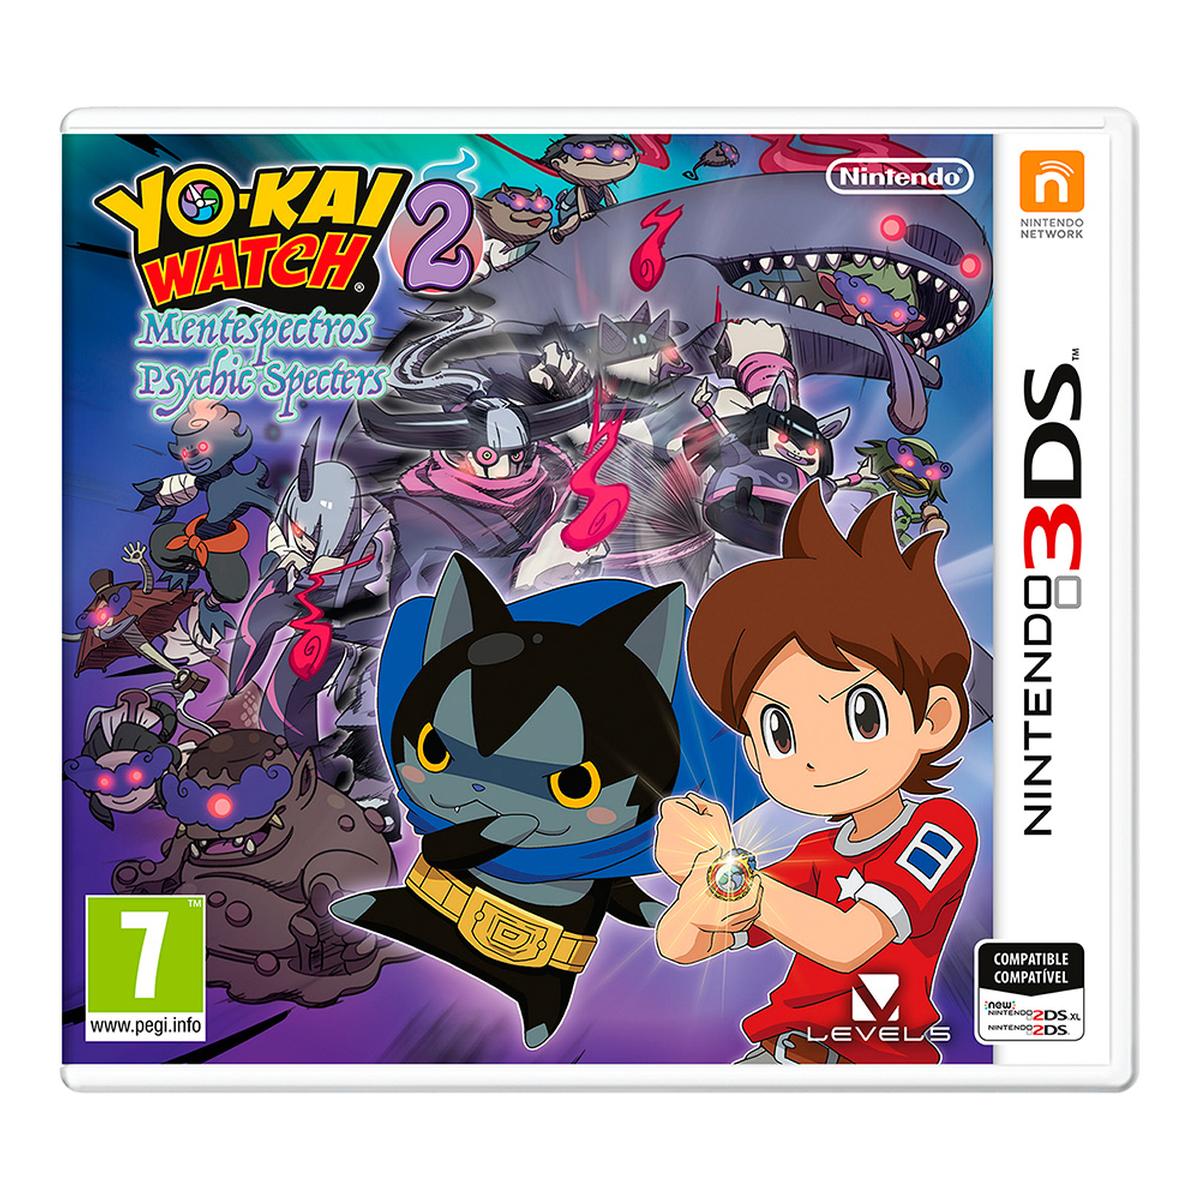 Nintendo 3DS - Yo-Kai Watch 2: Mentespectros | Software | Toys"R"Us España